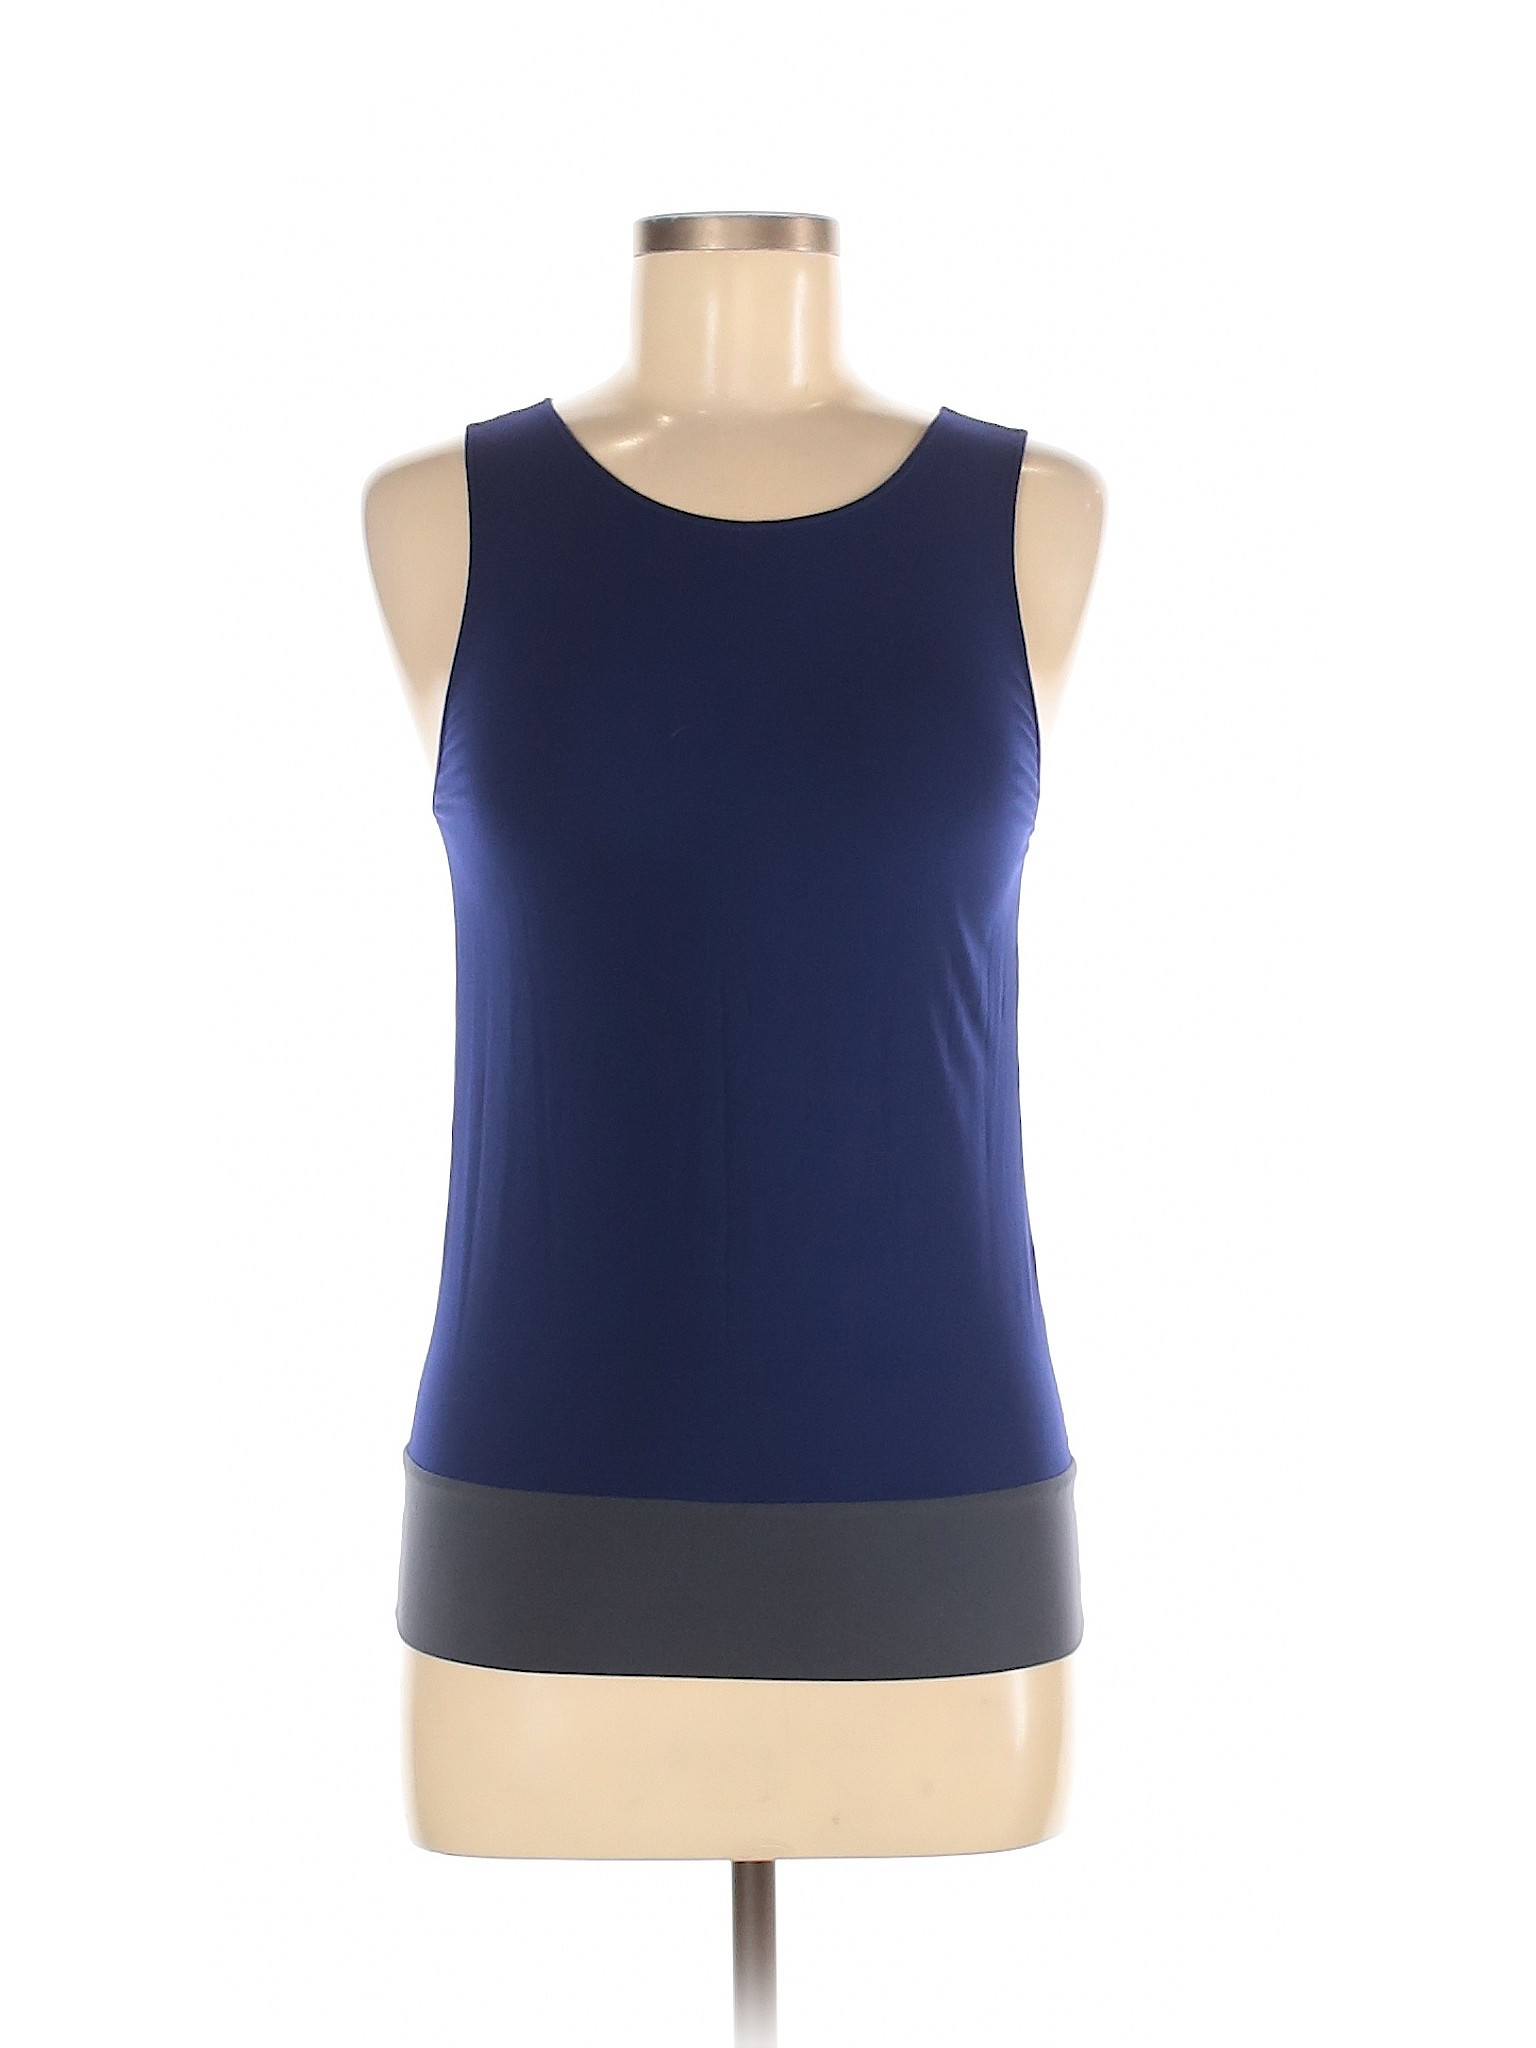 Calvin Klein Collection Women Blue Sleeveless Top M | eBay